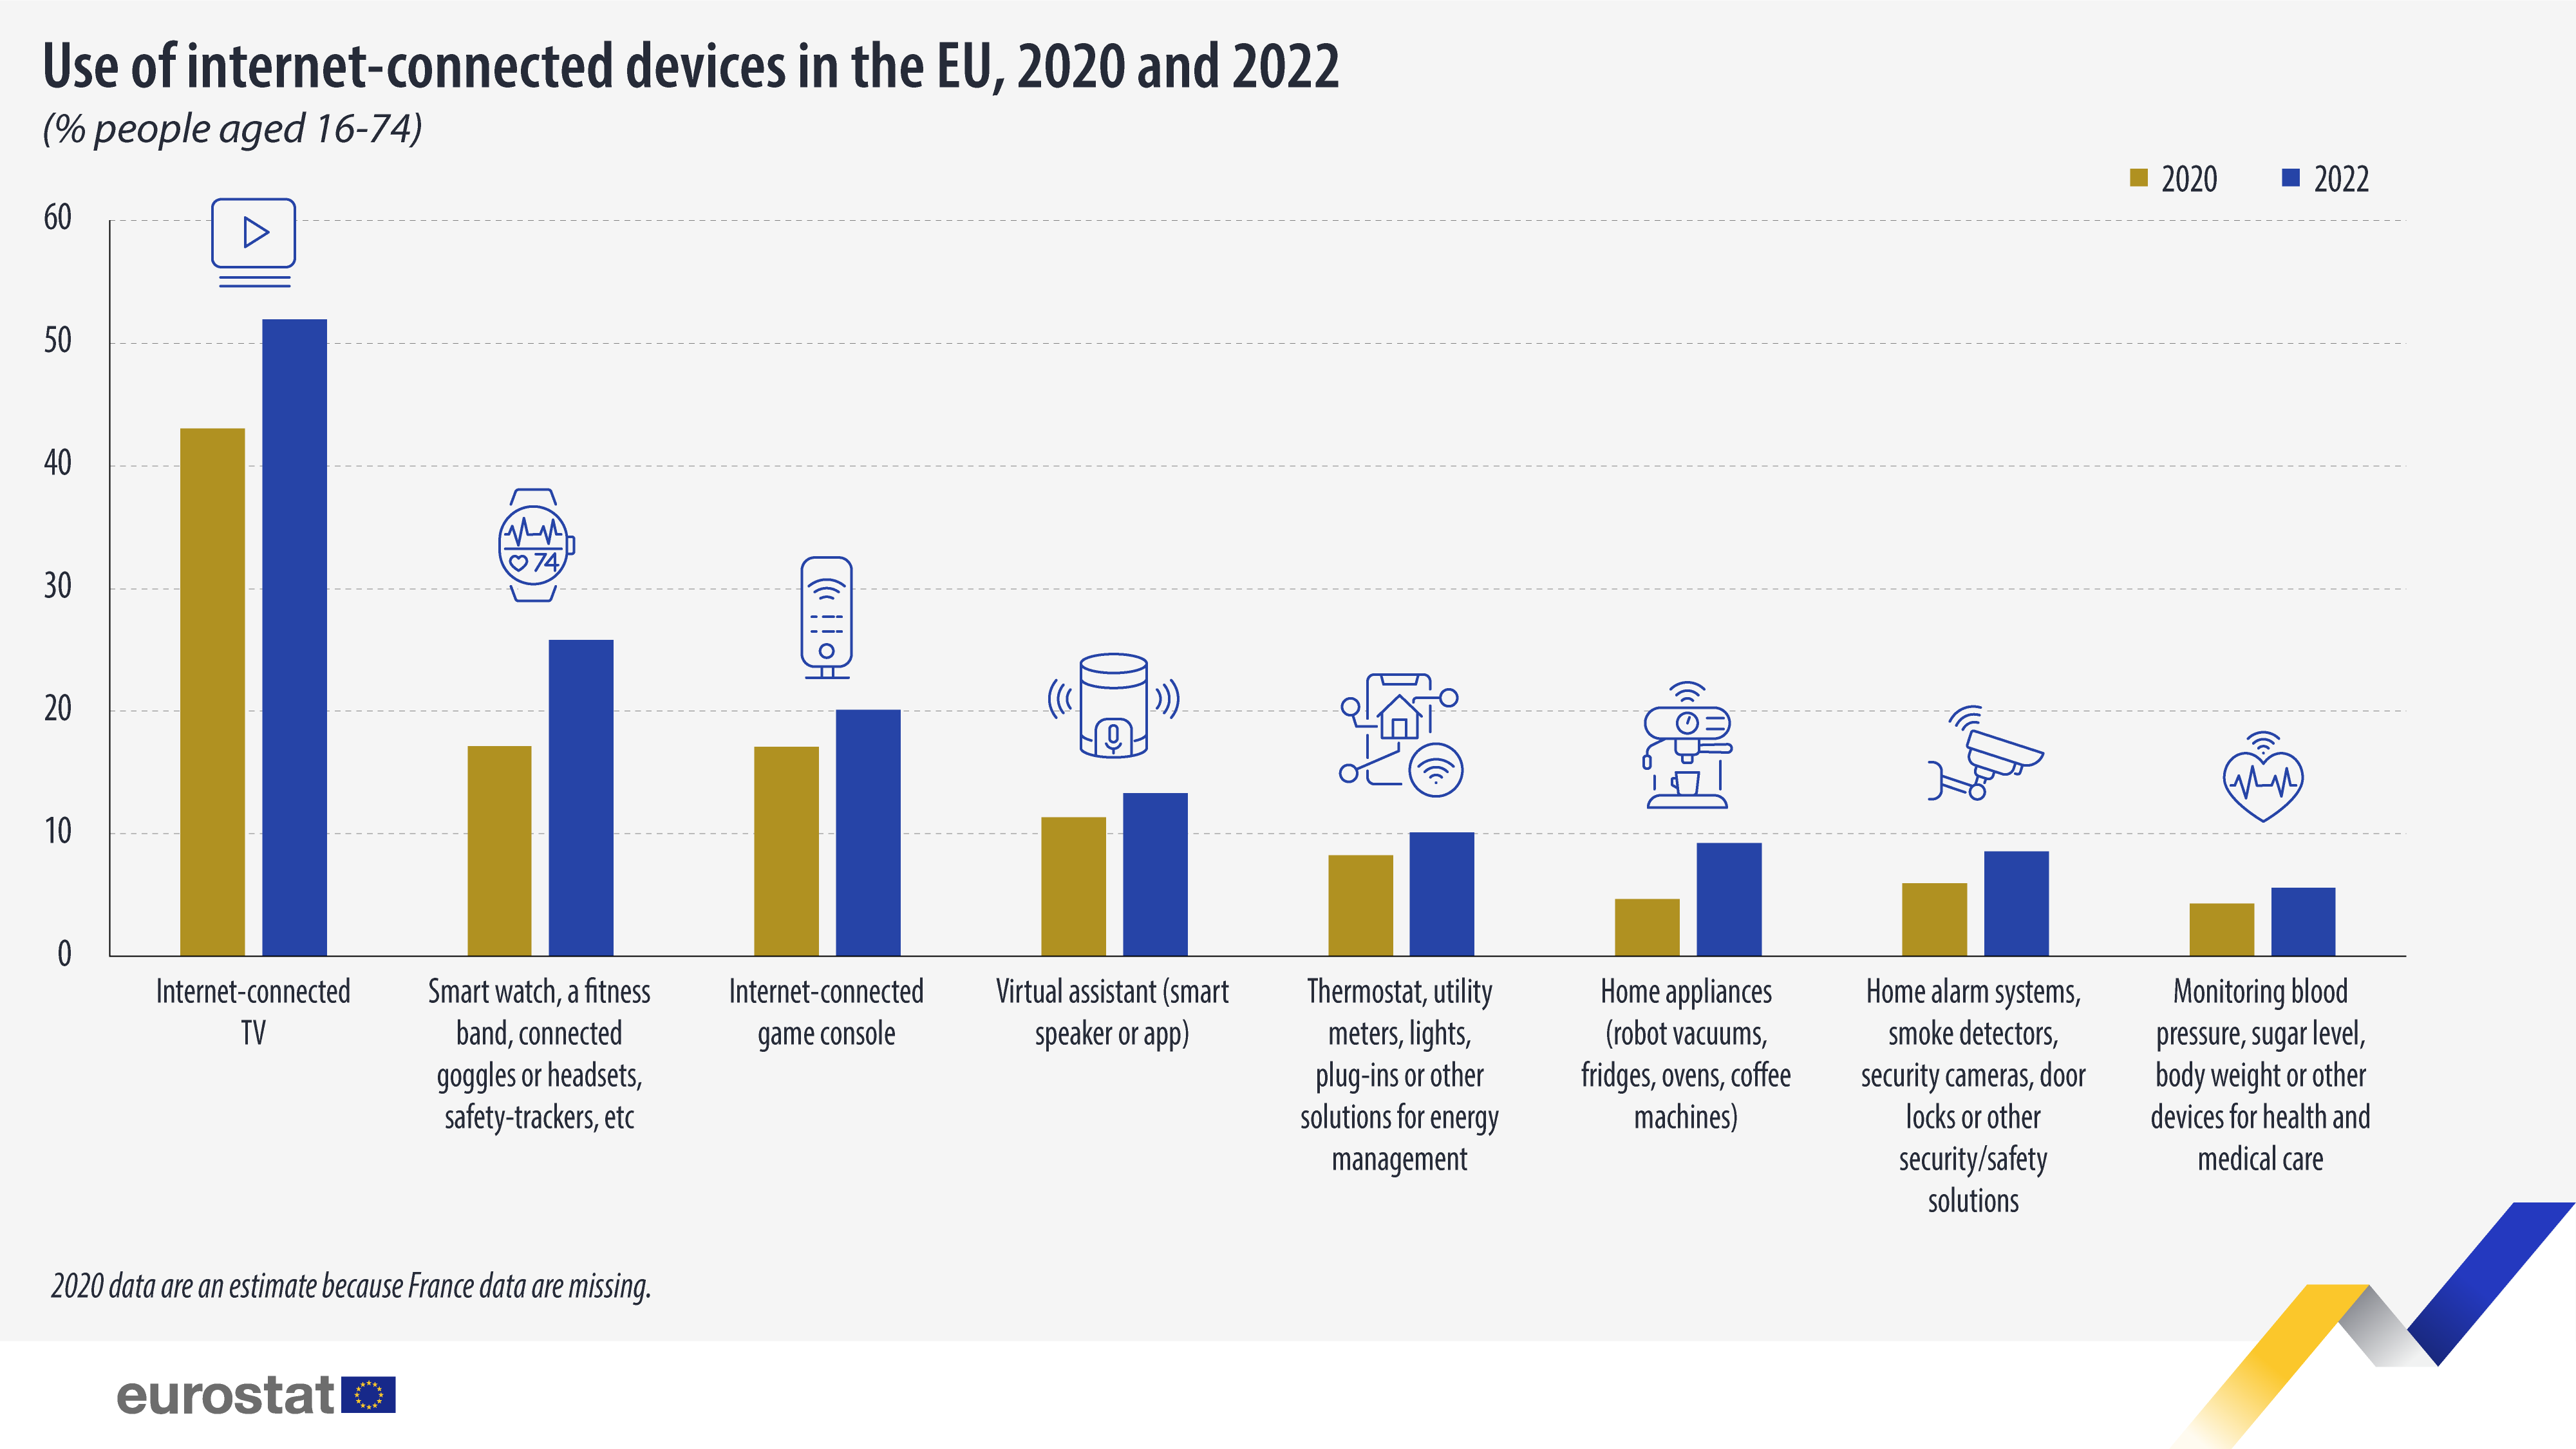 Γράφημα ράβδων: Χρήση συσκευών συνδεδεμένων στο διαδίκτυο στην ΕΕ, % των ατόμων ηλικίας 16-74 ετών, 2020 και 2022